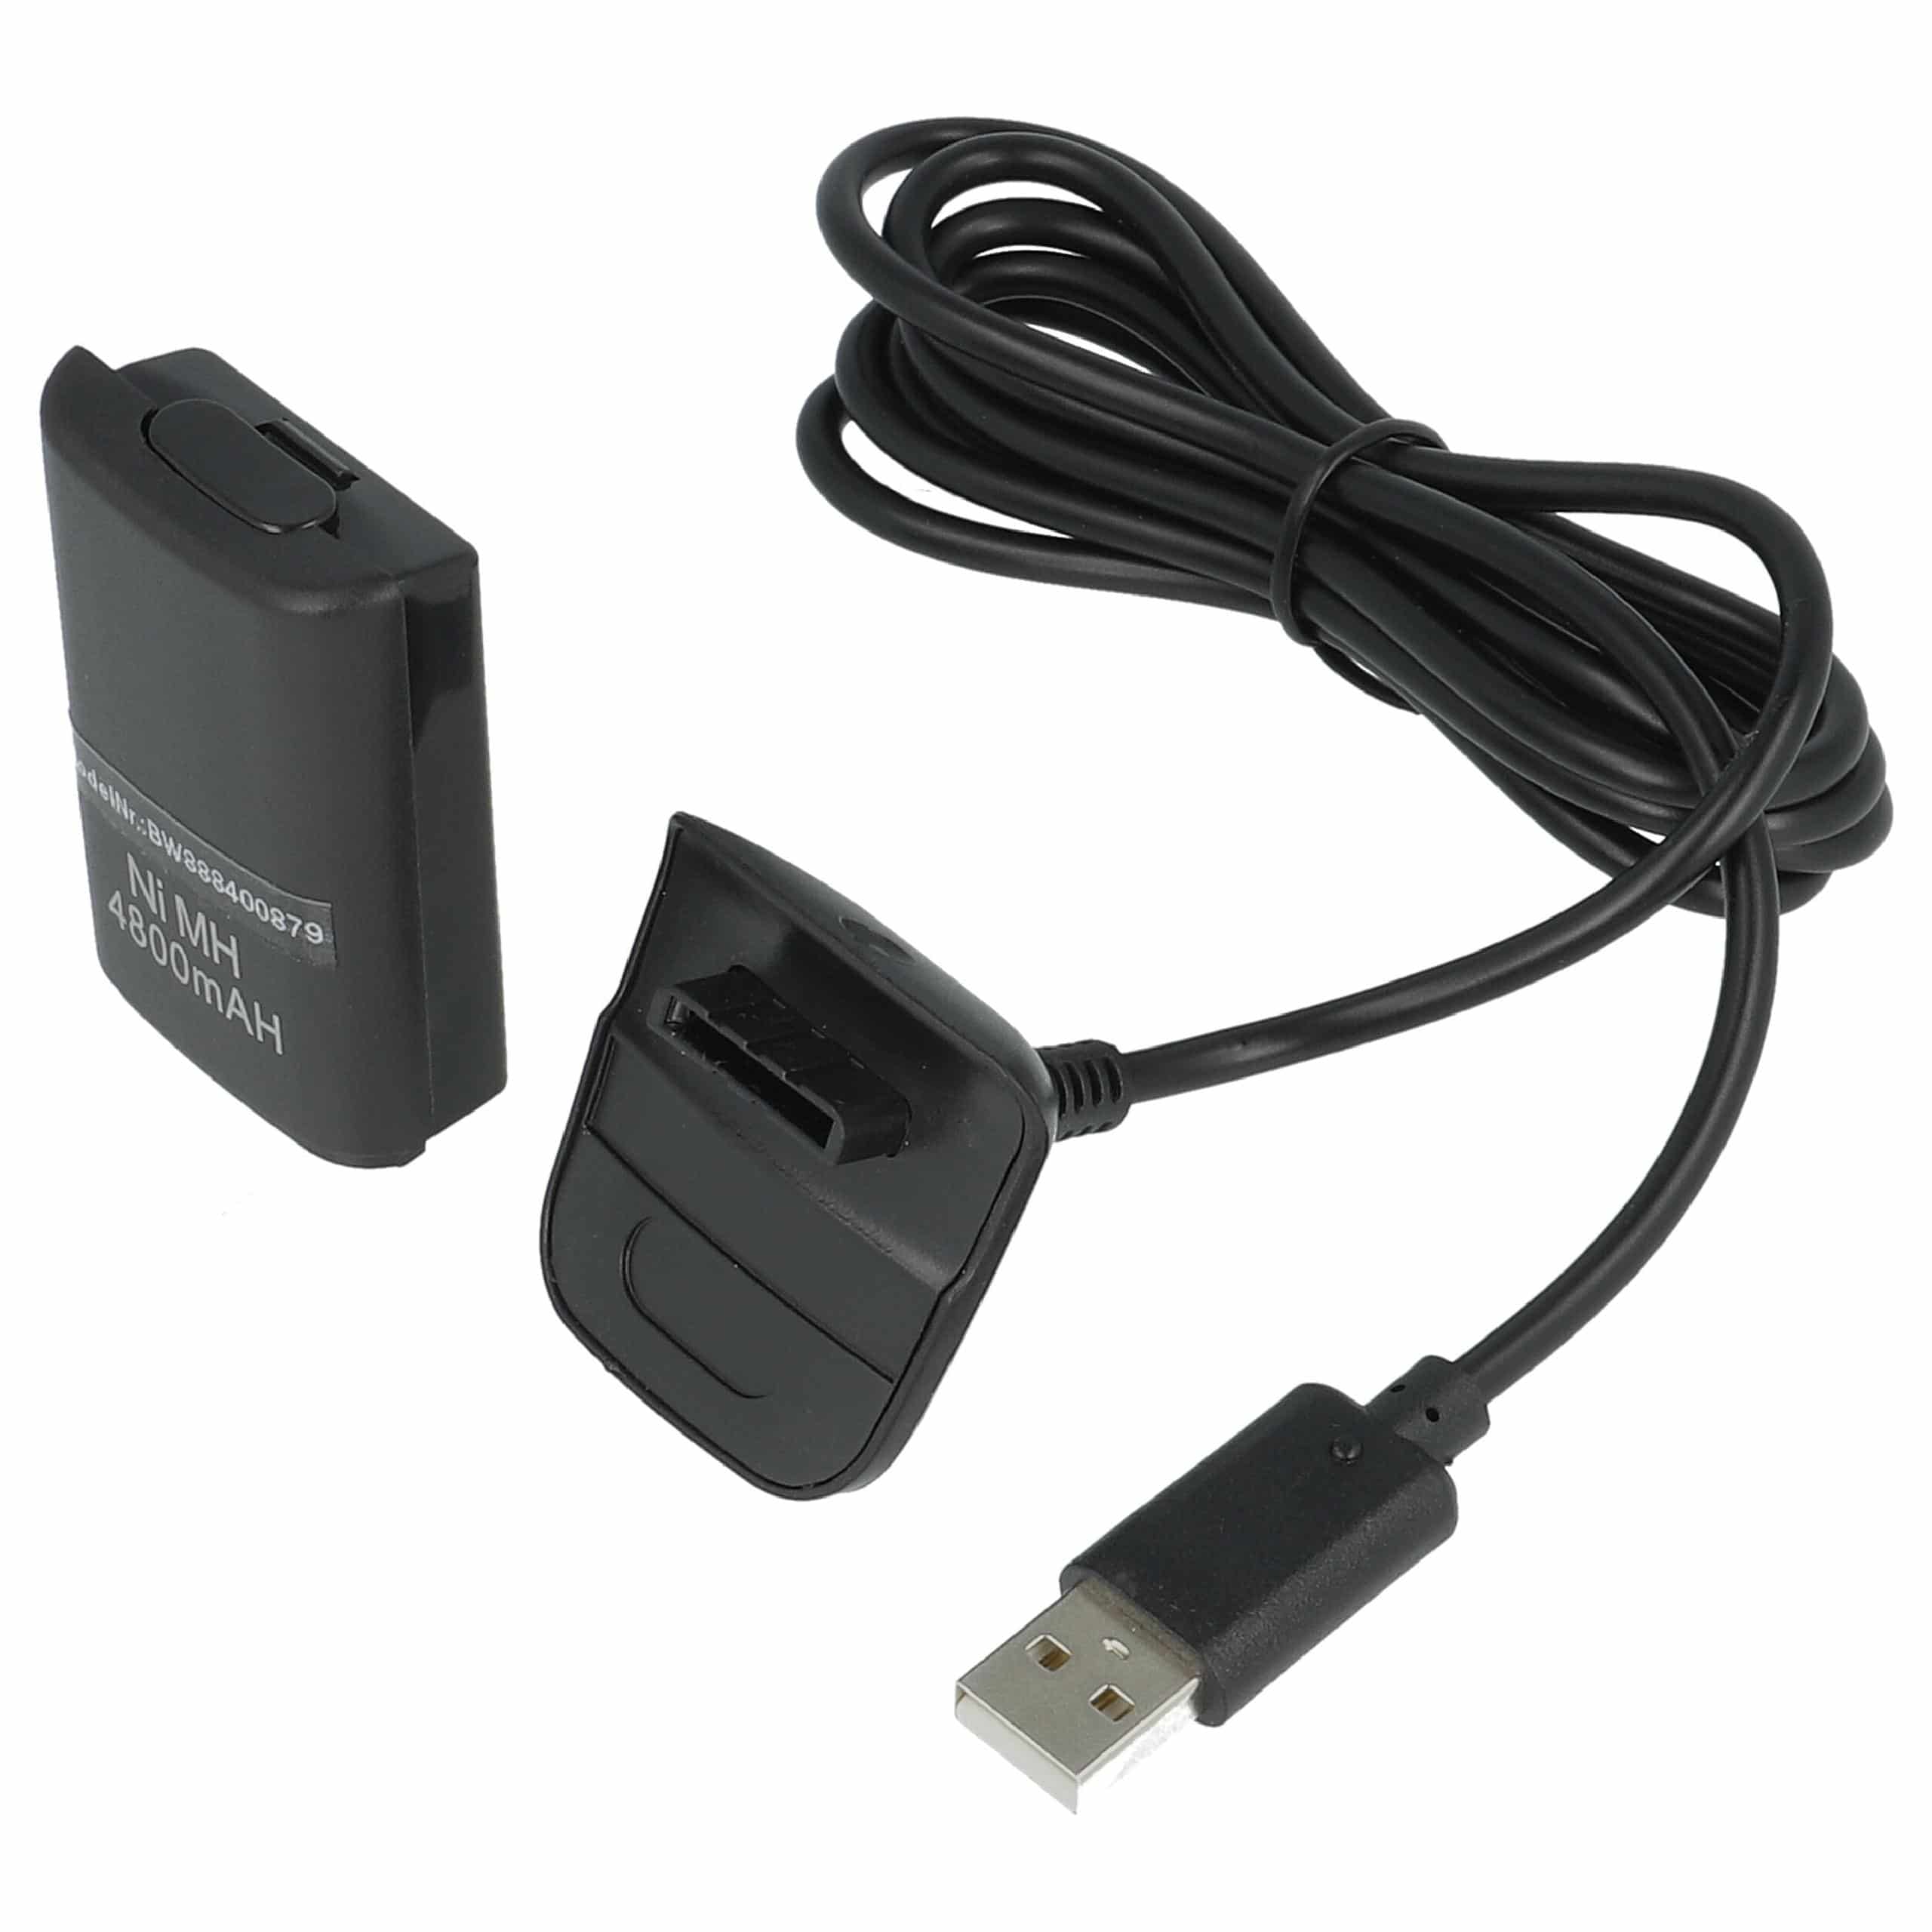 Zestaw Play&Charge Kit Microsoft Xbox 360 - 1x przewód zasilający, 1x akumulator, czarny